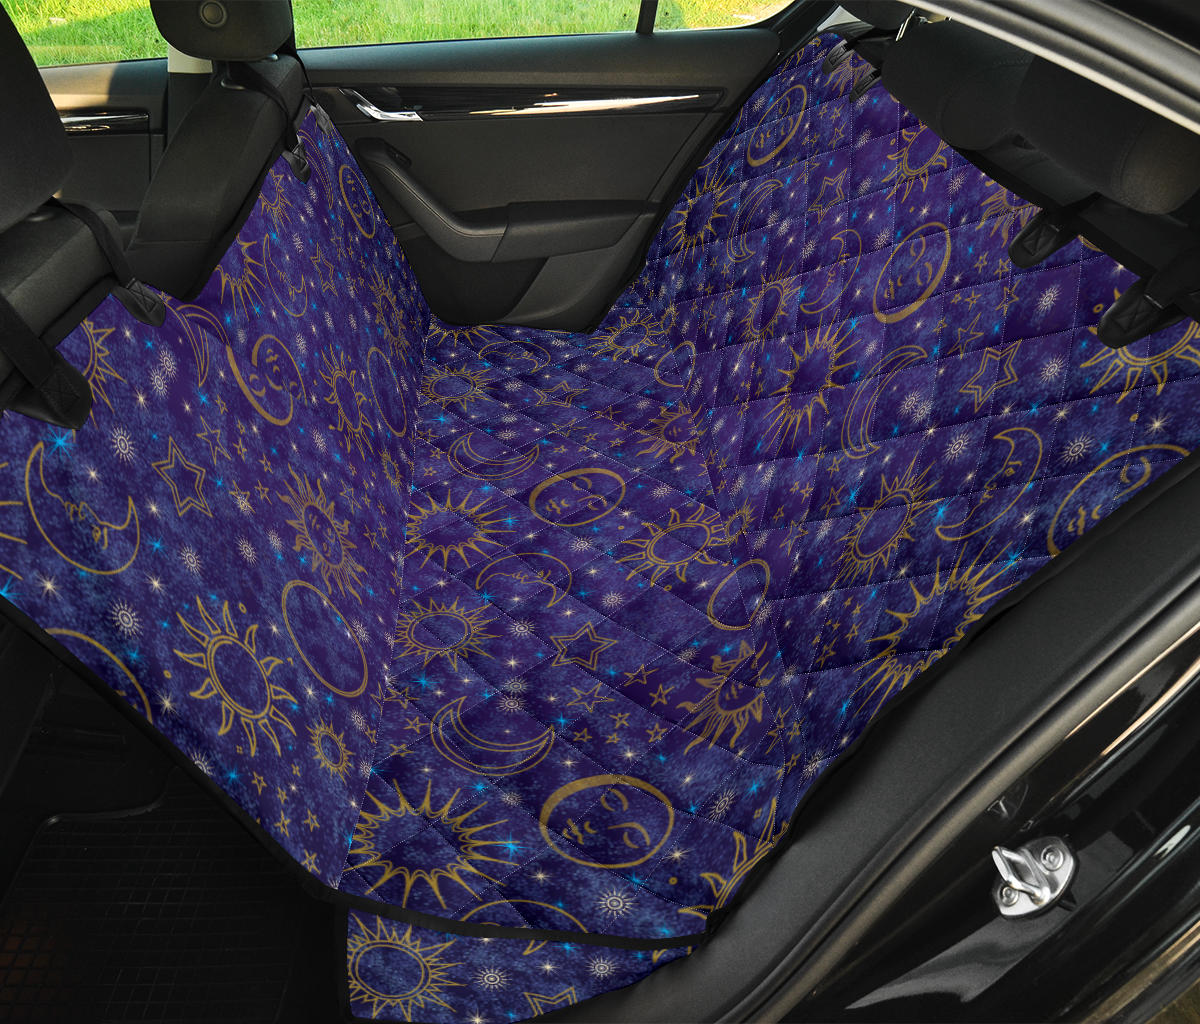 Indigo Blue Celestial Car Pet Seat Car Cover for Back Seat Auto